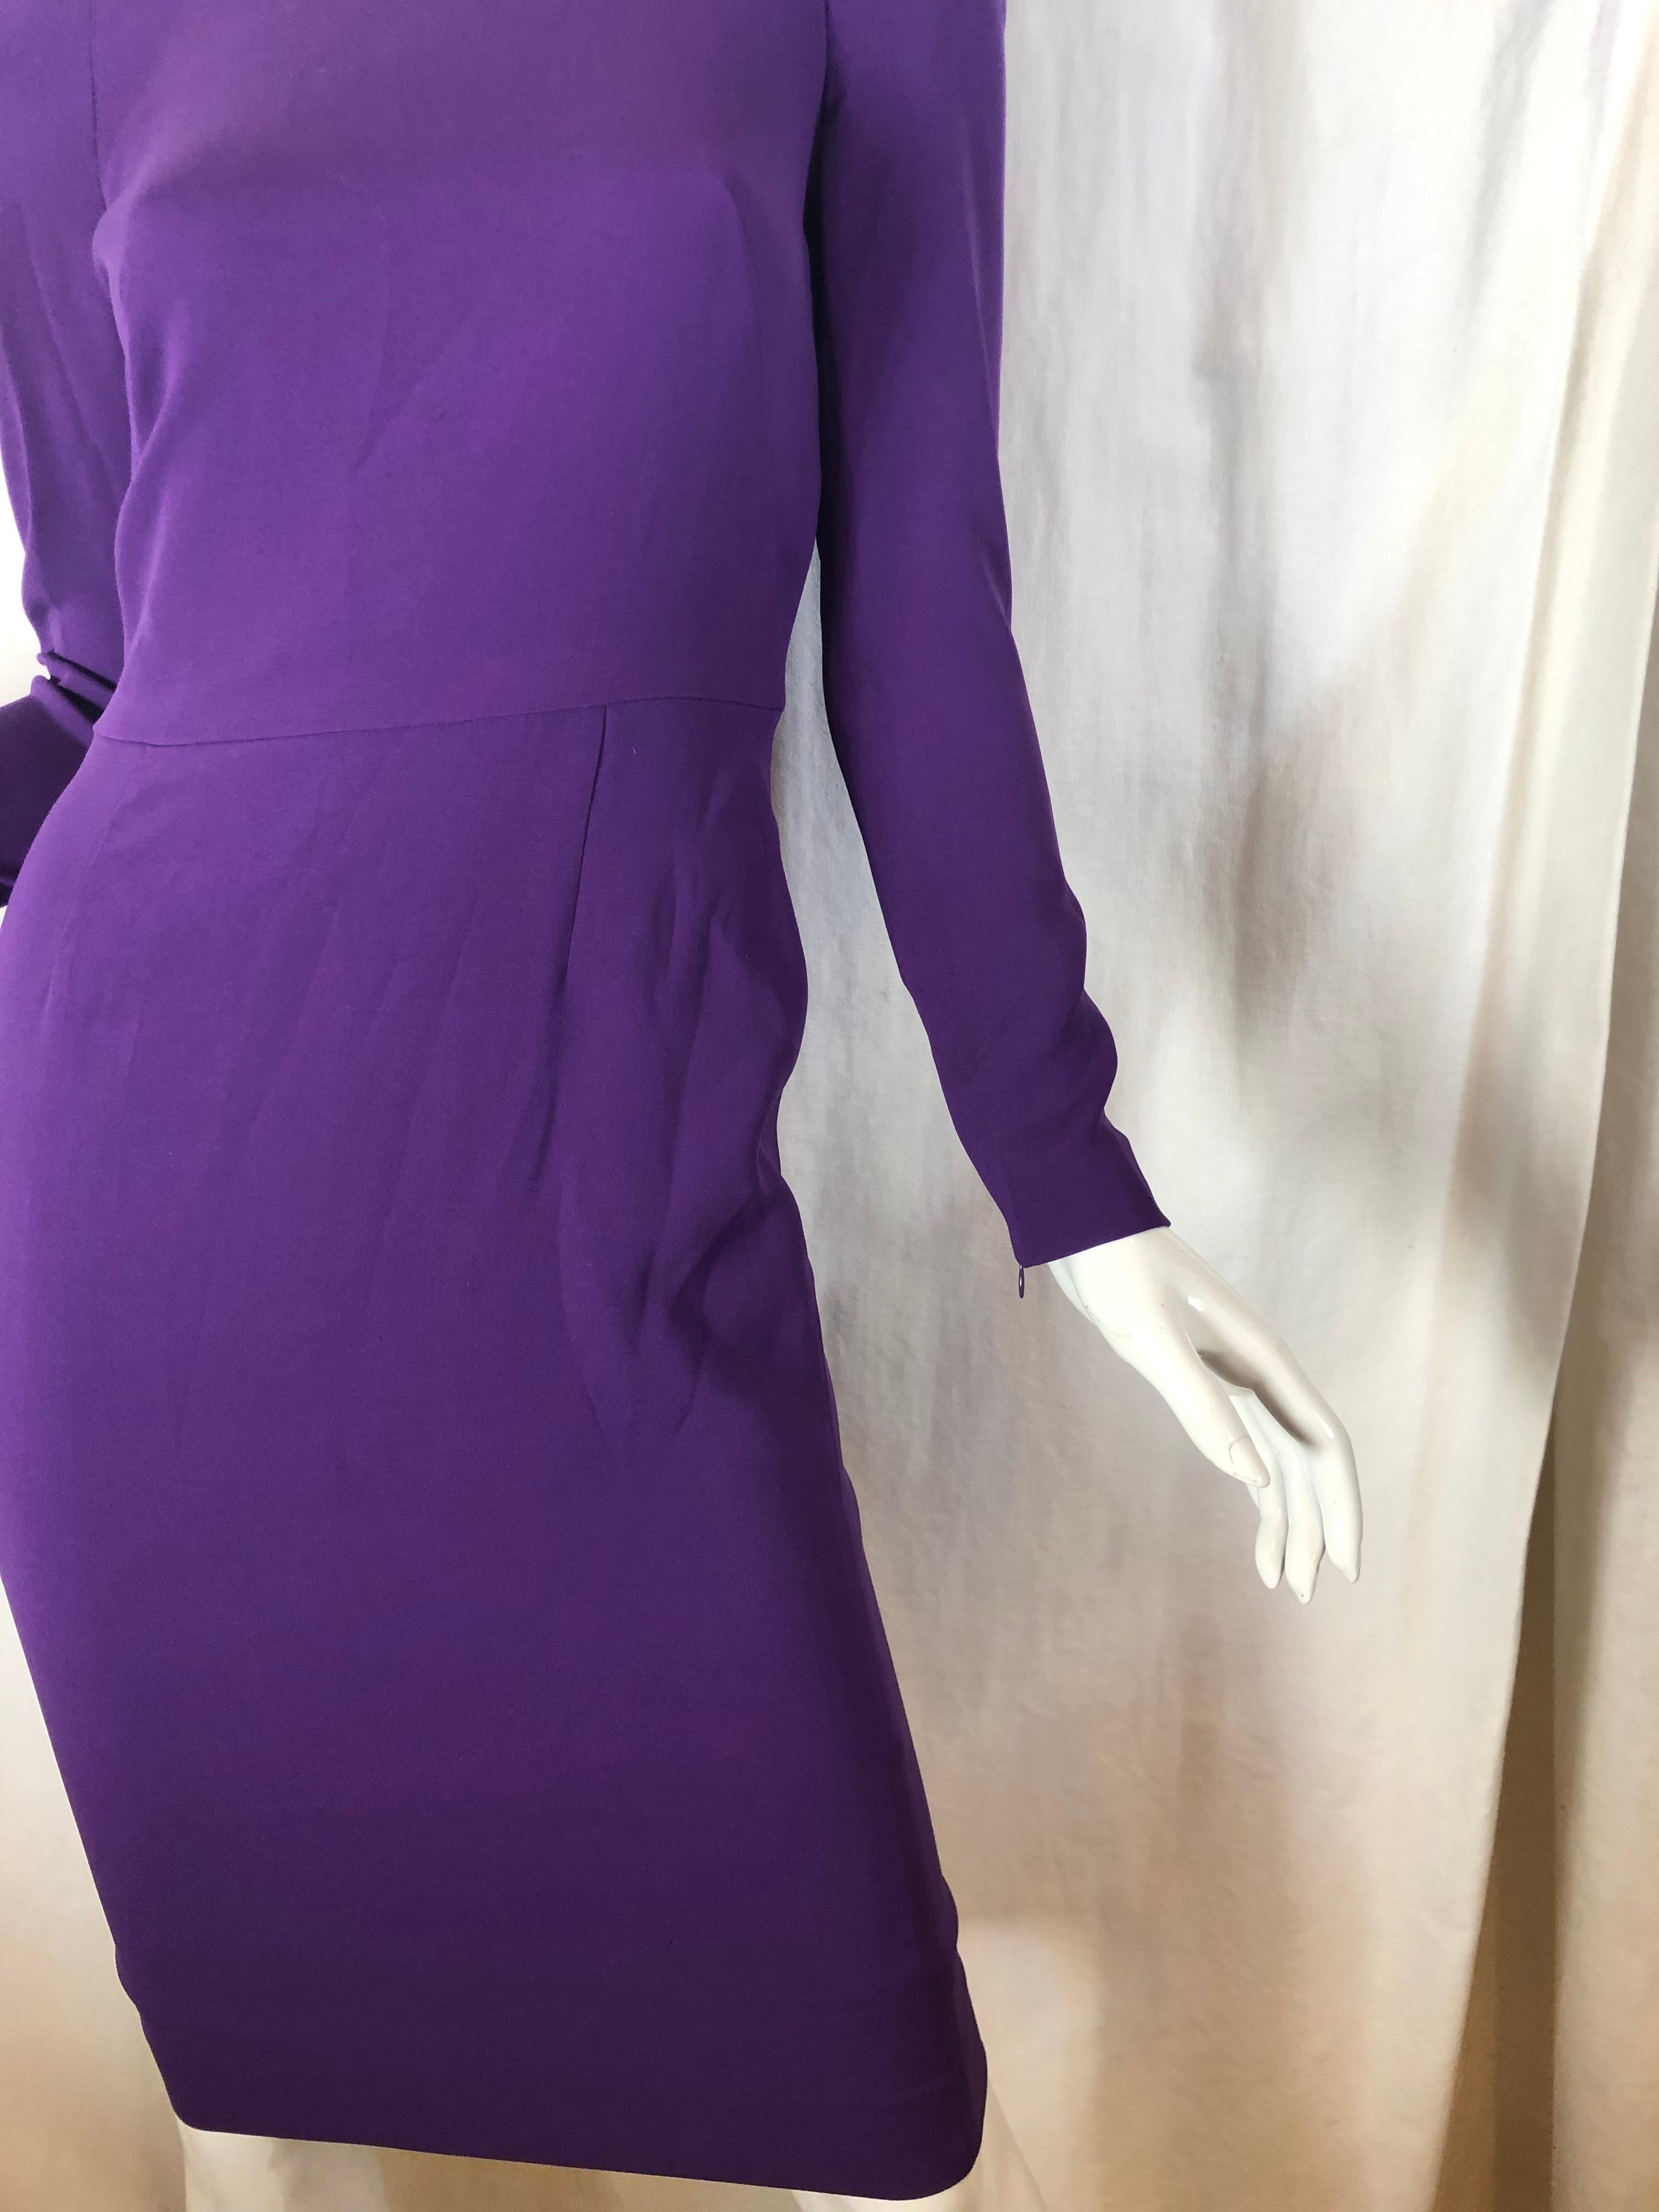 Tom Ford Purple Silk Dress 6